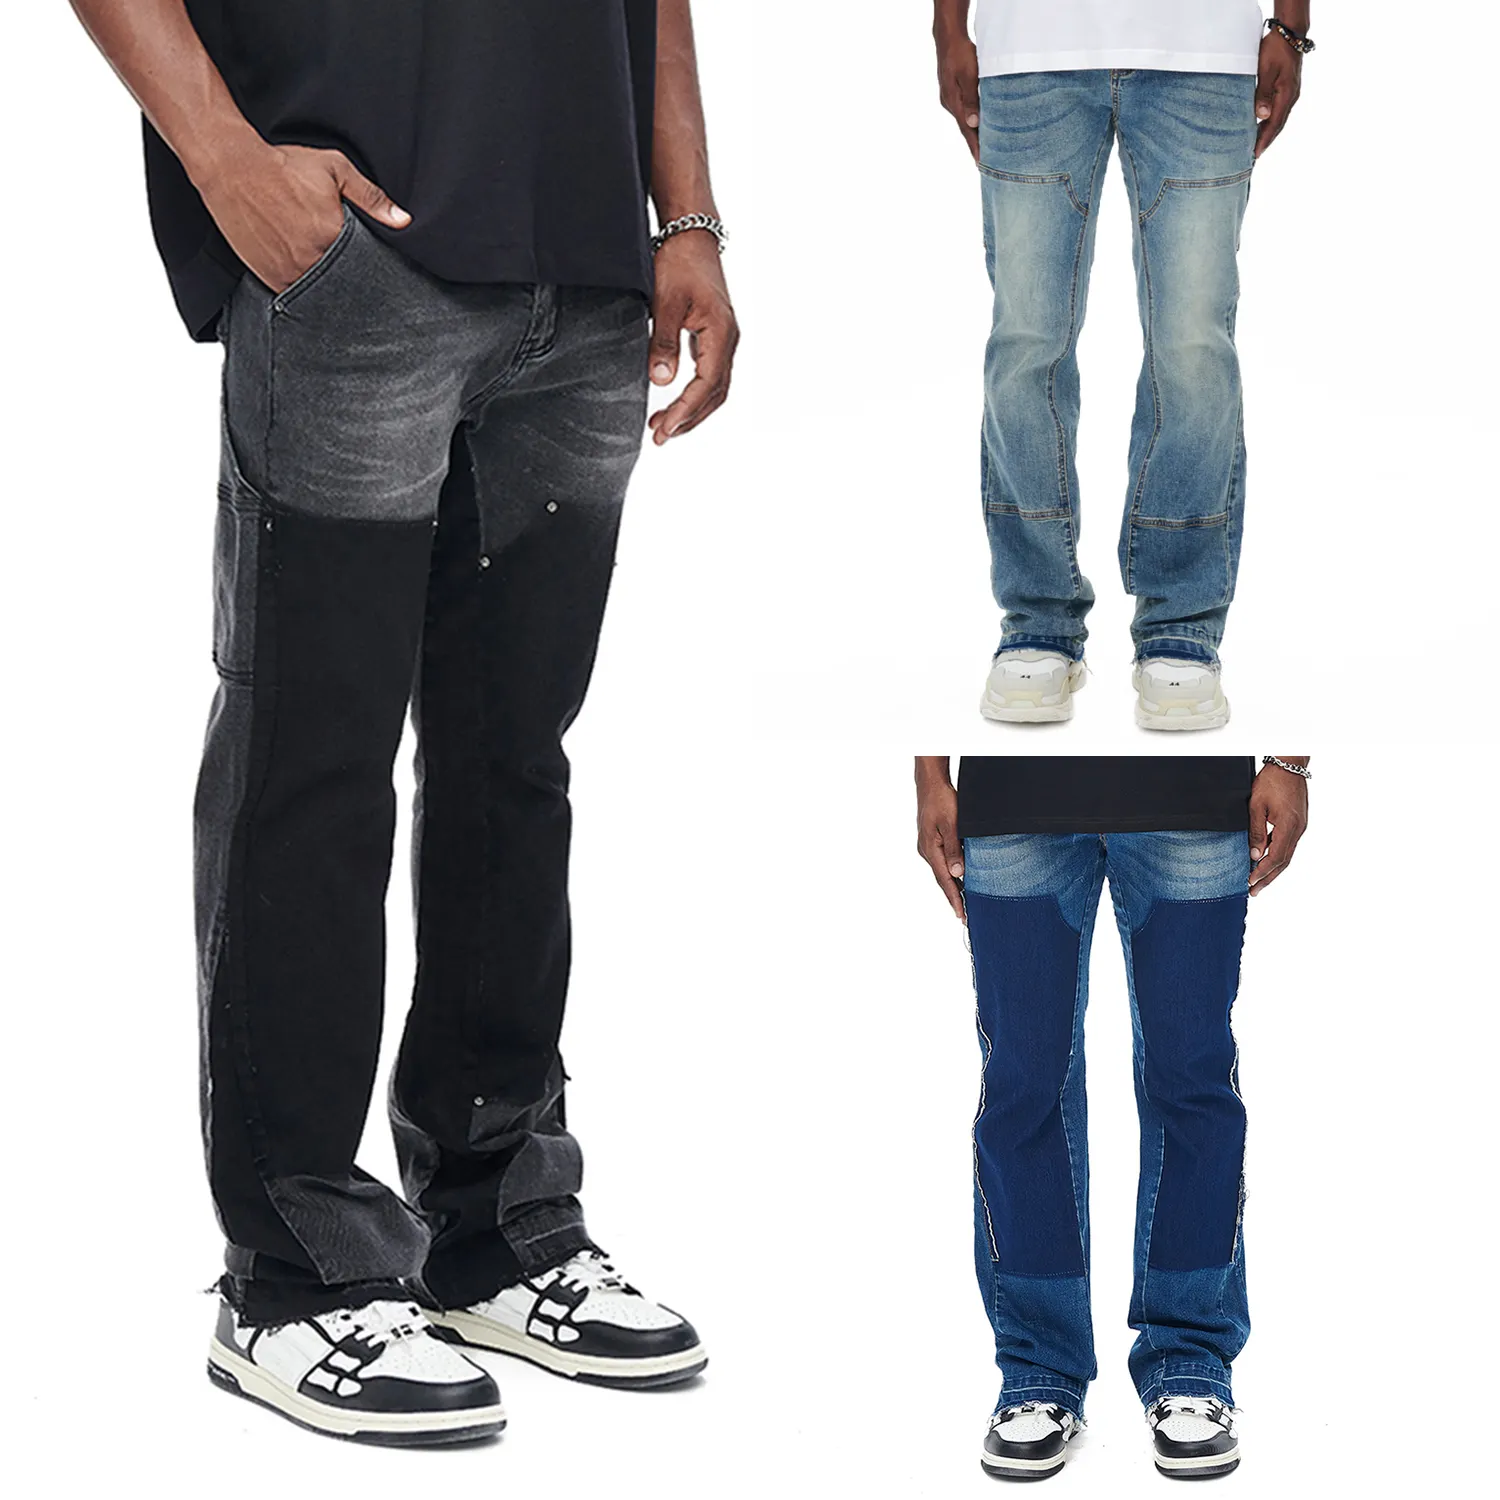 Gingtoo Jeans Nhà Sản Xuất Chất Lượng Cao Chắp Vá Desgin Quần Xếp Chồng Lên Nhau Baggy Bùng Jeans Người Đàn Ông